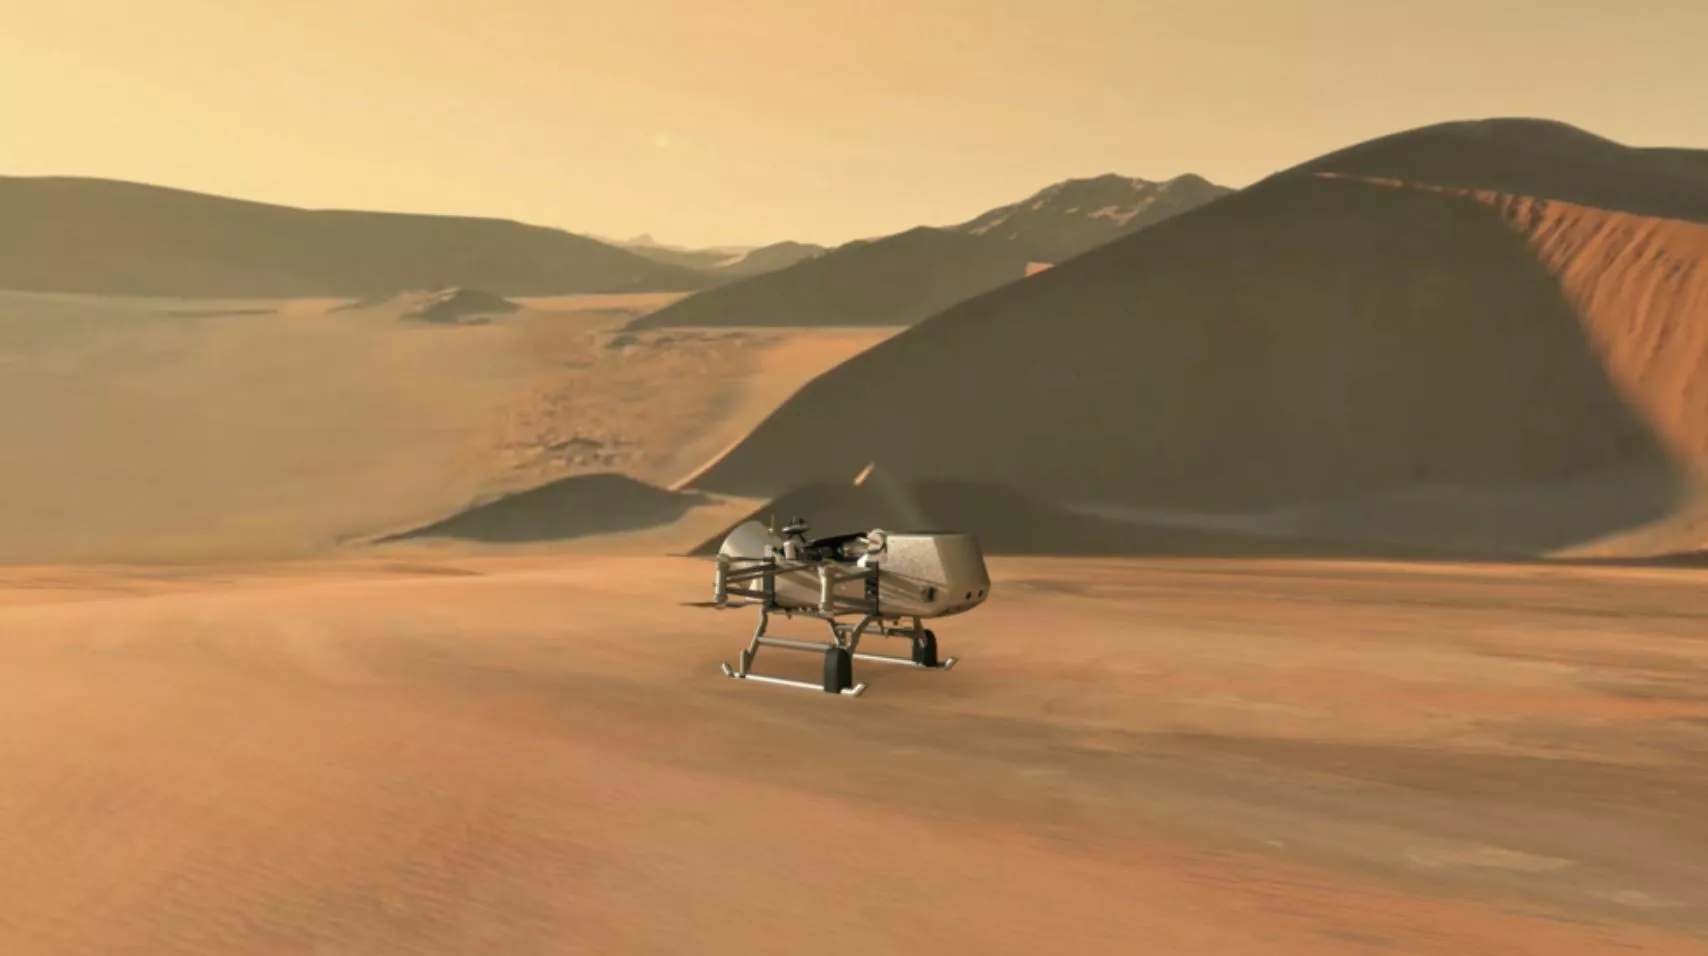 Прототип уникального космического корабля NASA для отправки на Титан, один из спутников Сатурна